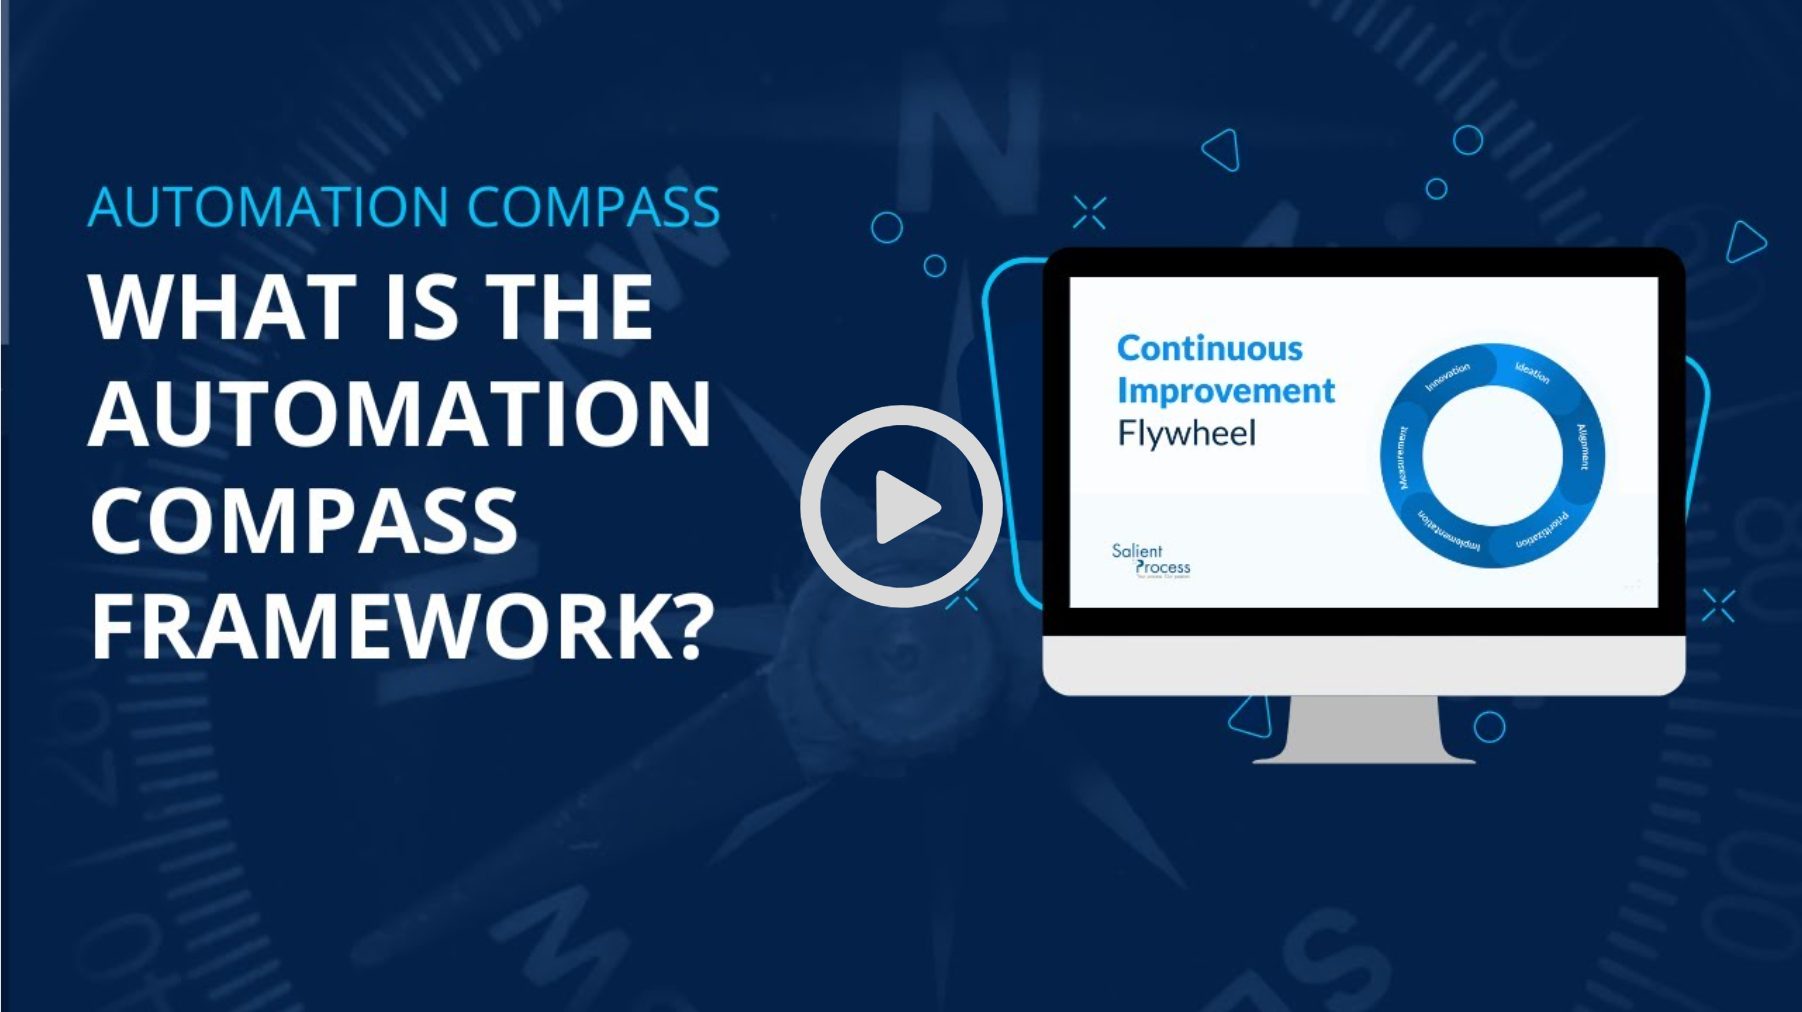 Automation compass framework